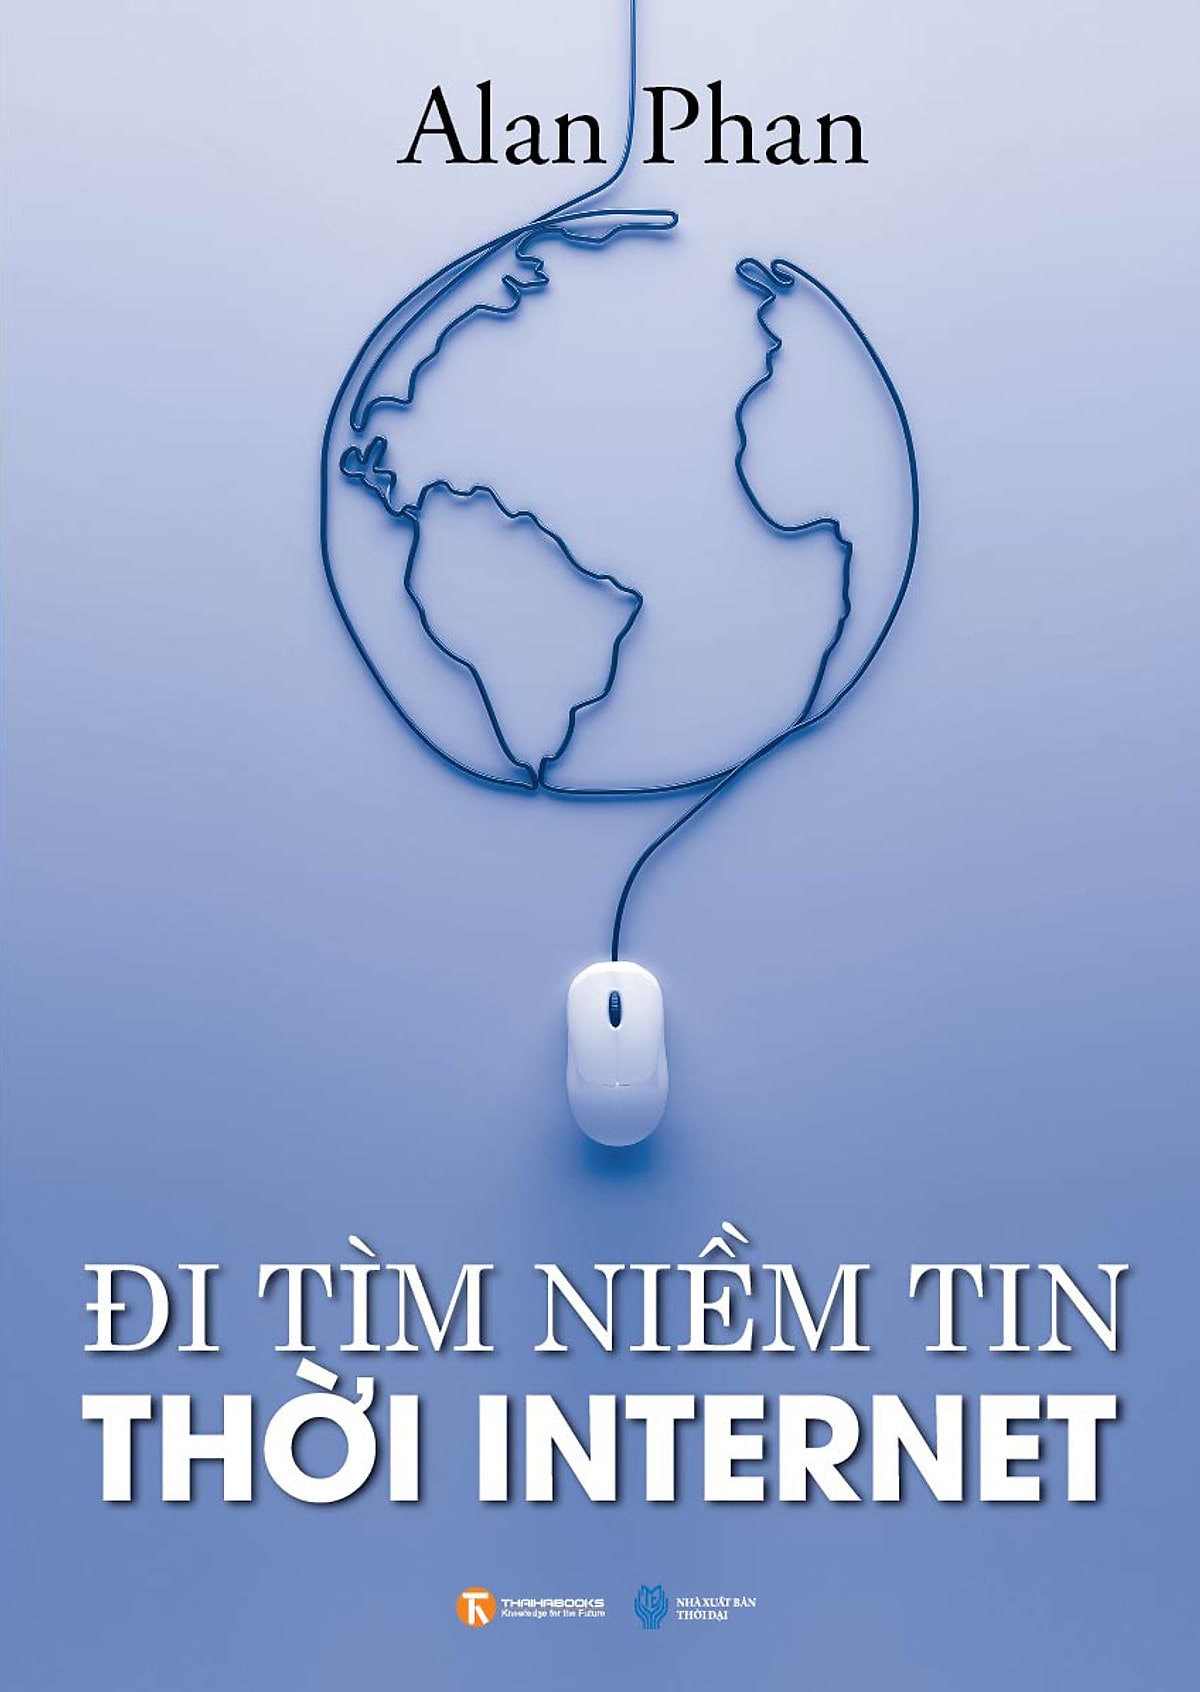 5.Di_tim_niem_tin_thoi_internet-min